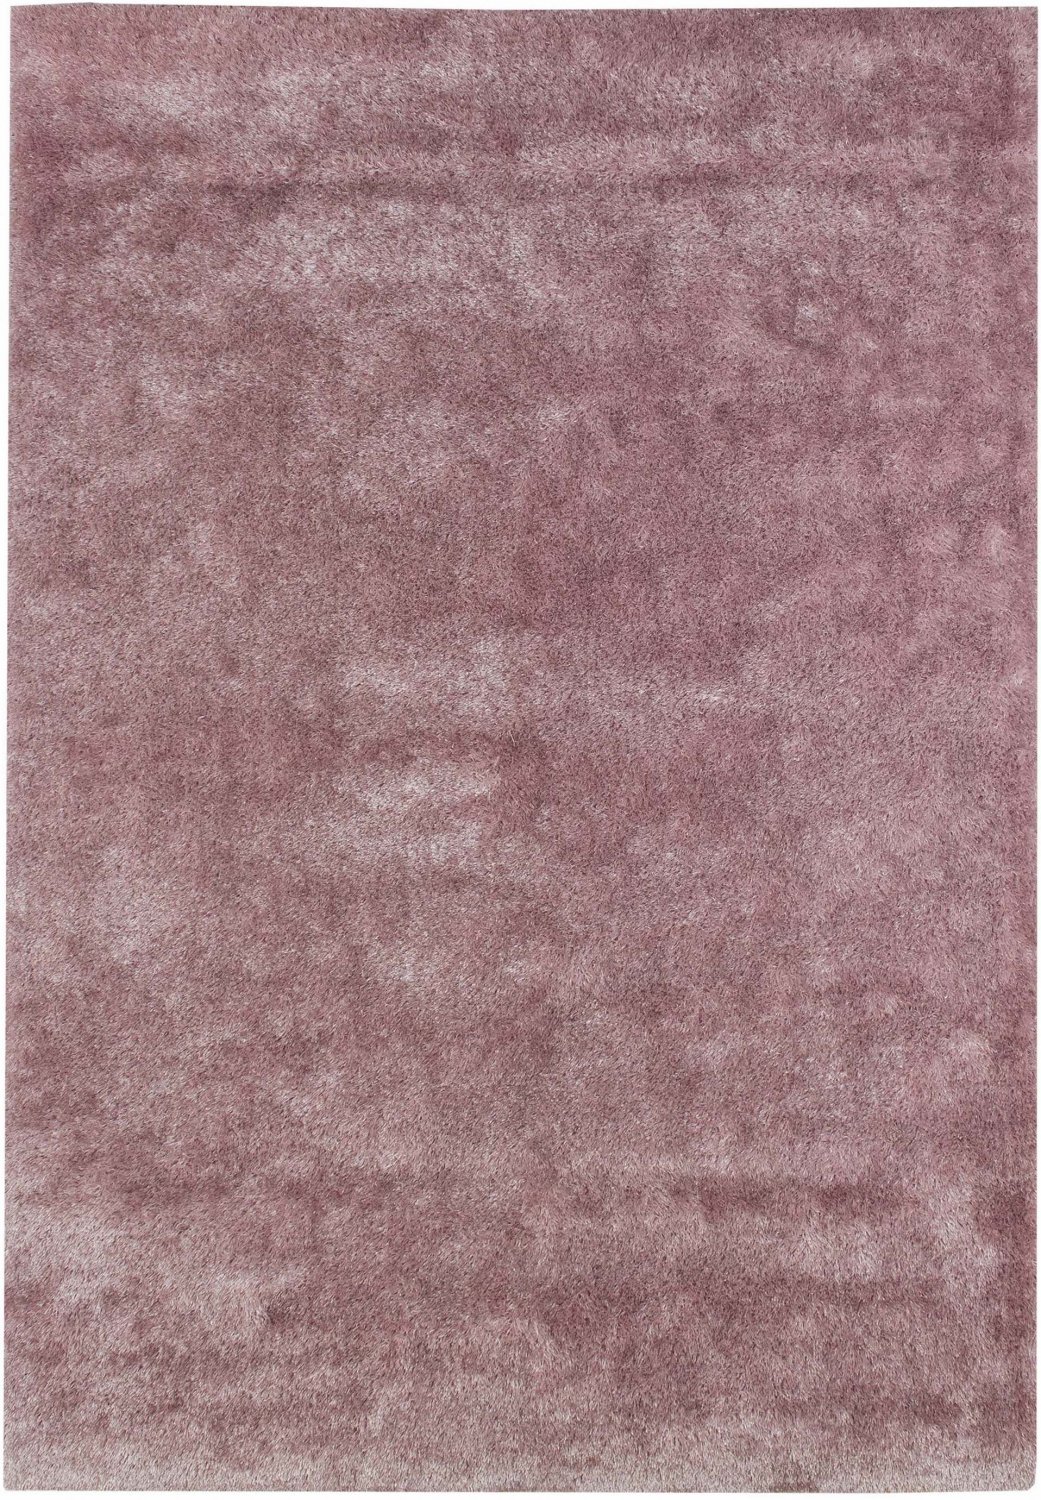 Cosy hochflorteppich rosa shaggy teppich rund hochflor wohnzimmer 60x120 cm 80x 150 cm 140x200 cm 160x230 cm 200x300 cm